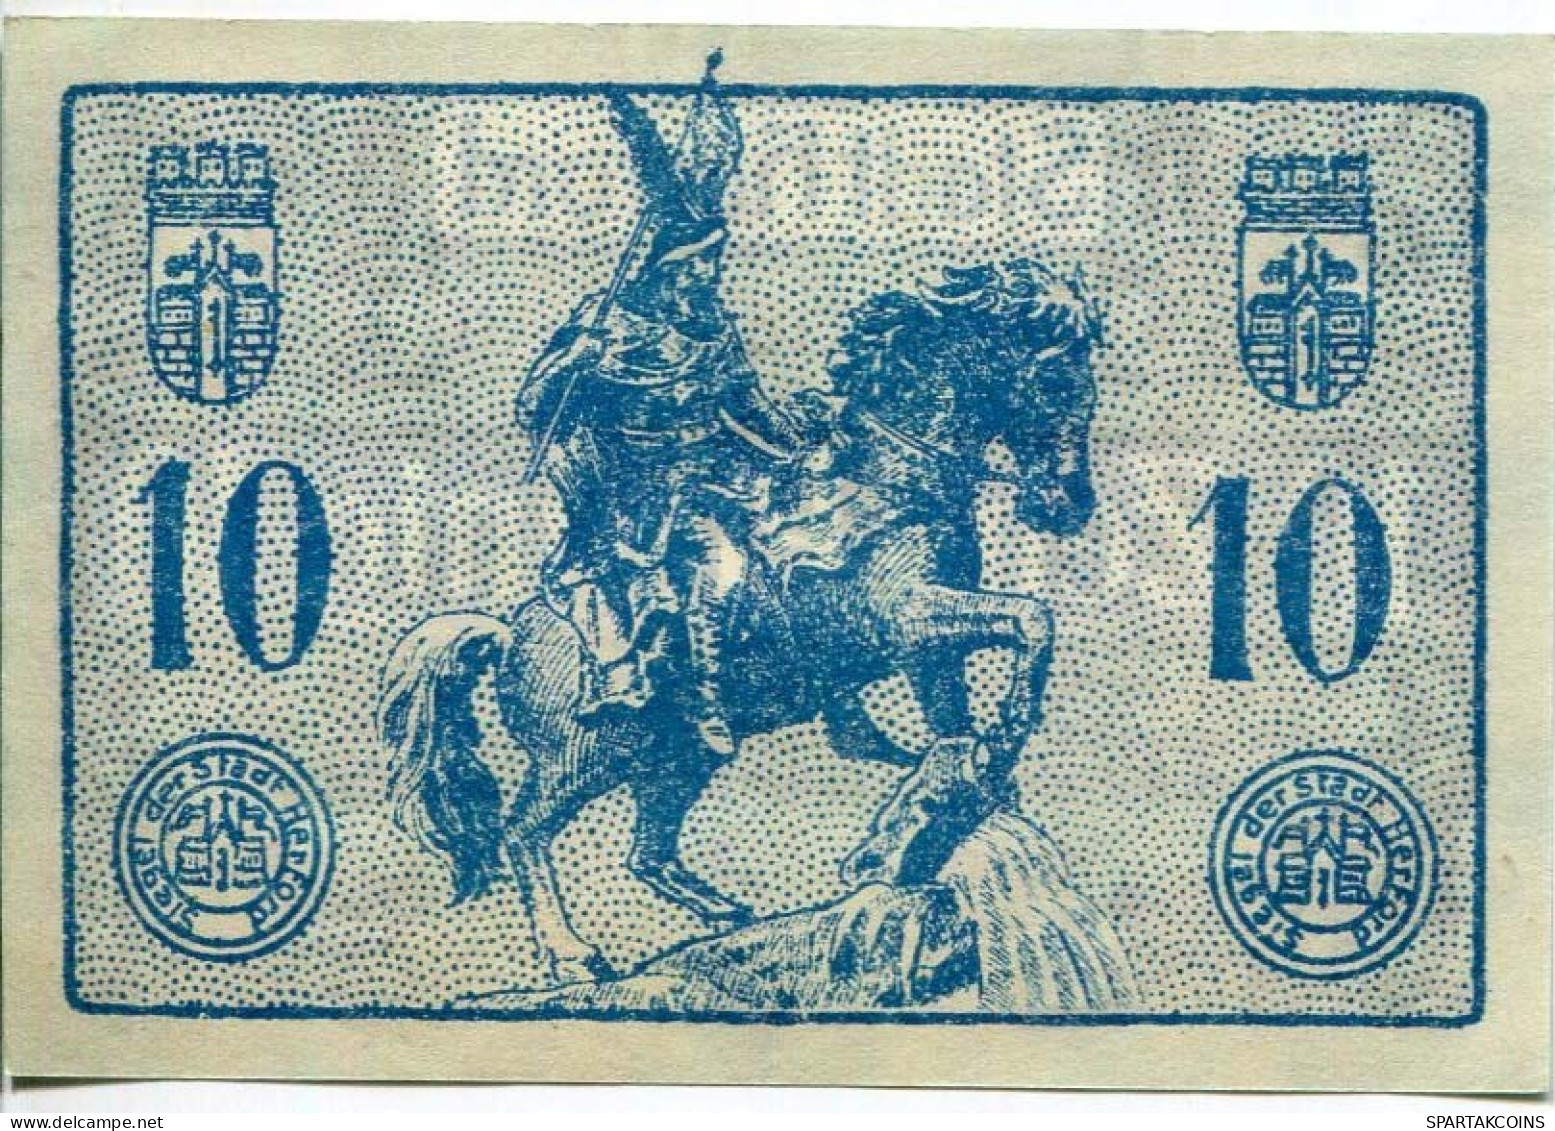 10 PFENNIG 1920 Stadt HERFORD Westphalia DEUTSCHLAND Notgeld Papiergeld Banknote #PL716 - [11] Emissioni Locali